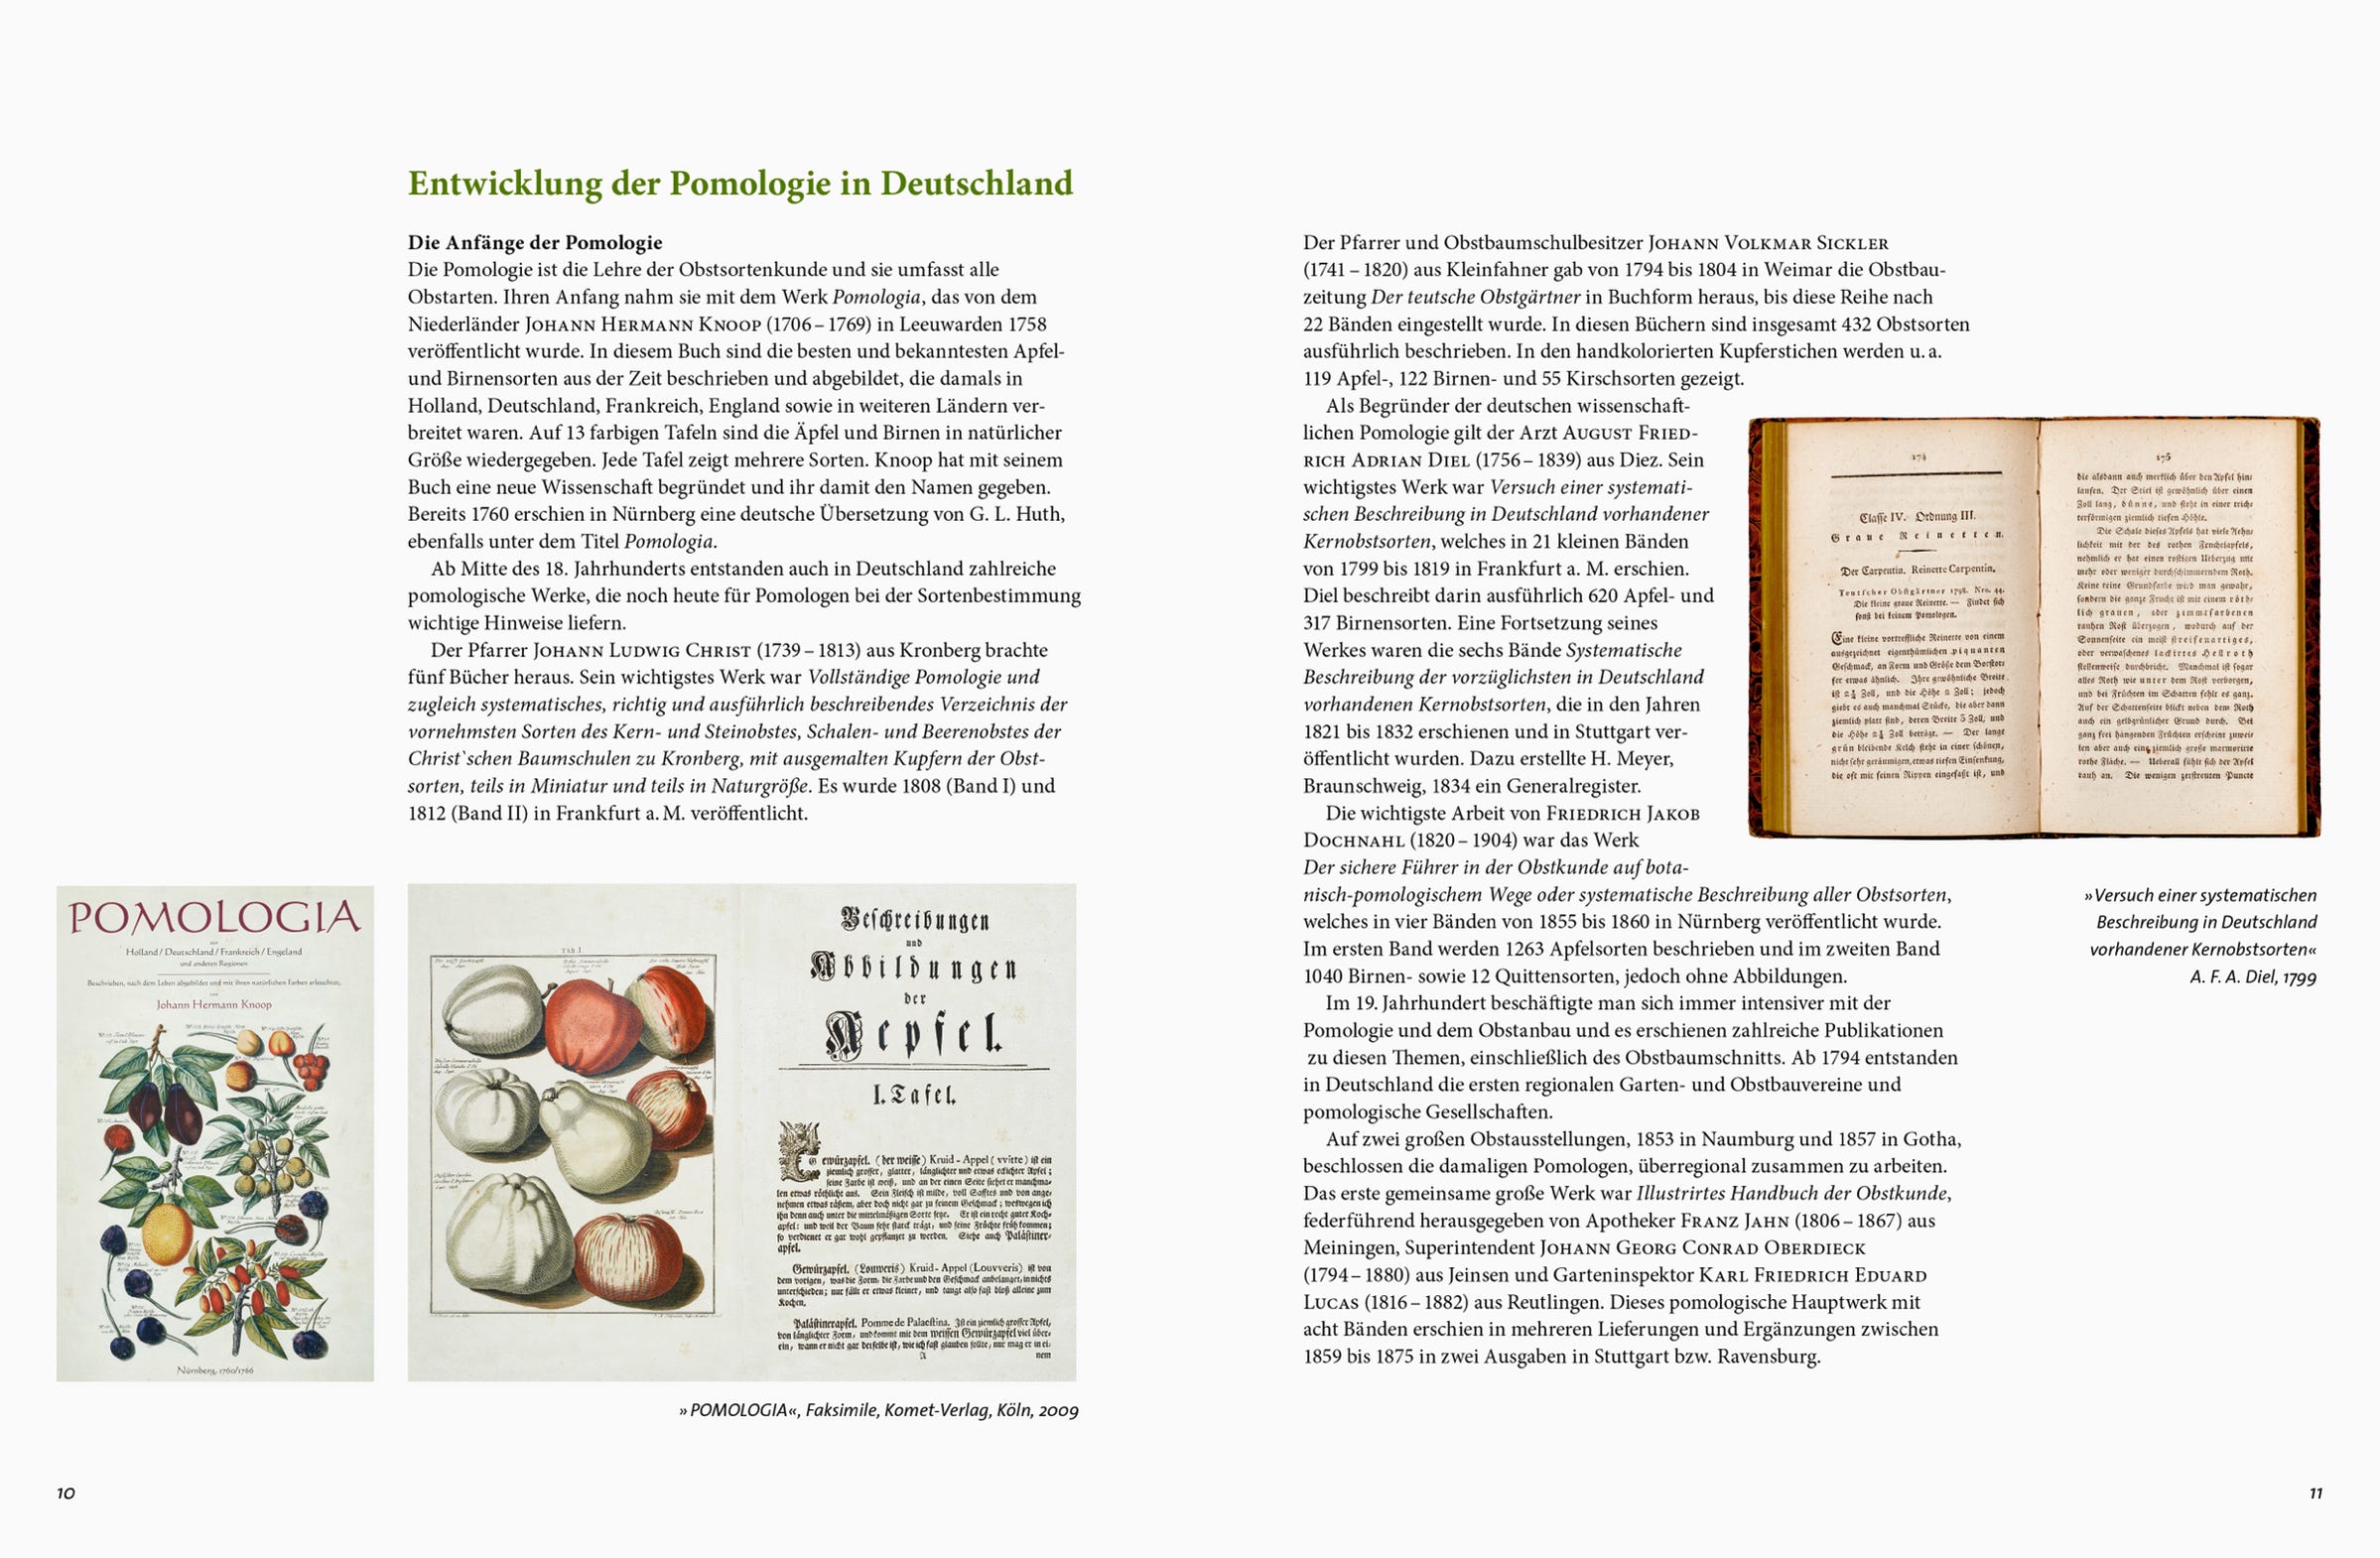 Beispielseite aus dem Buch "Apfelsorten in Deutschland": Ein Artikel zur Geschichte der Pomologie